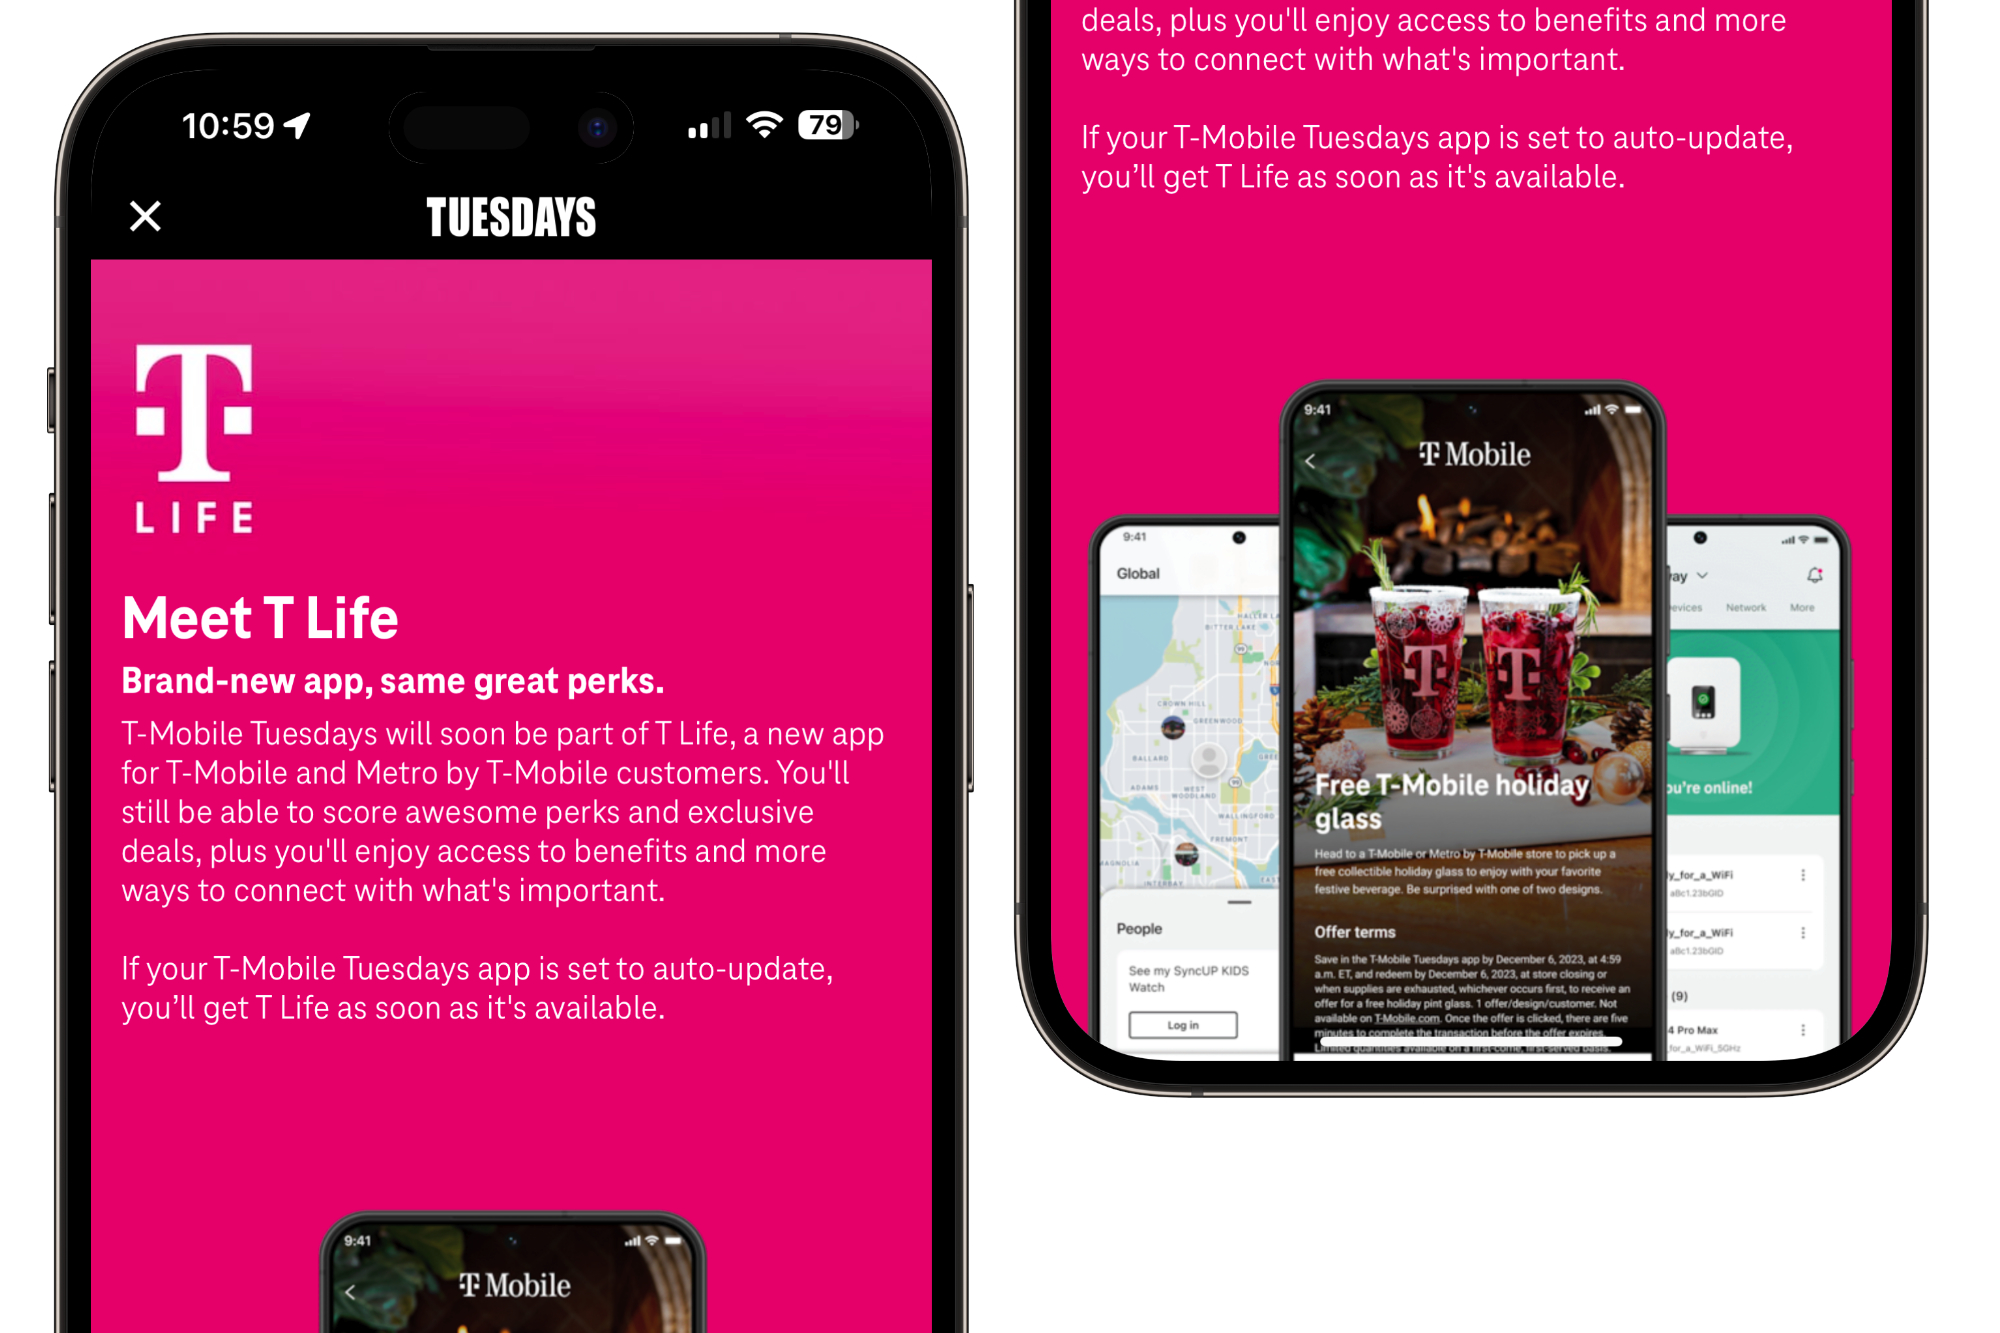 تصویری از برنامه سه شنبه های T-Mobile که تبلیغاتی را برای برنامه جدید T Life نشان می دهد.